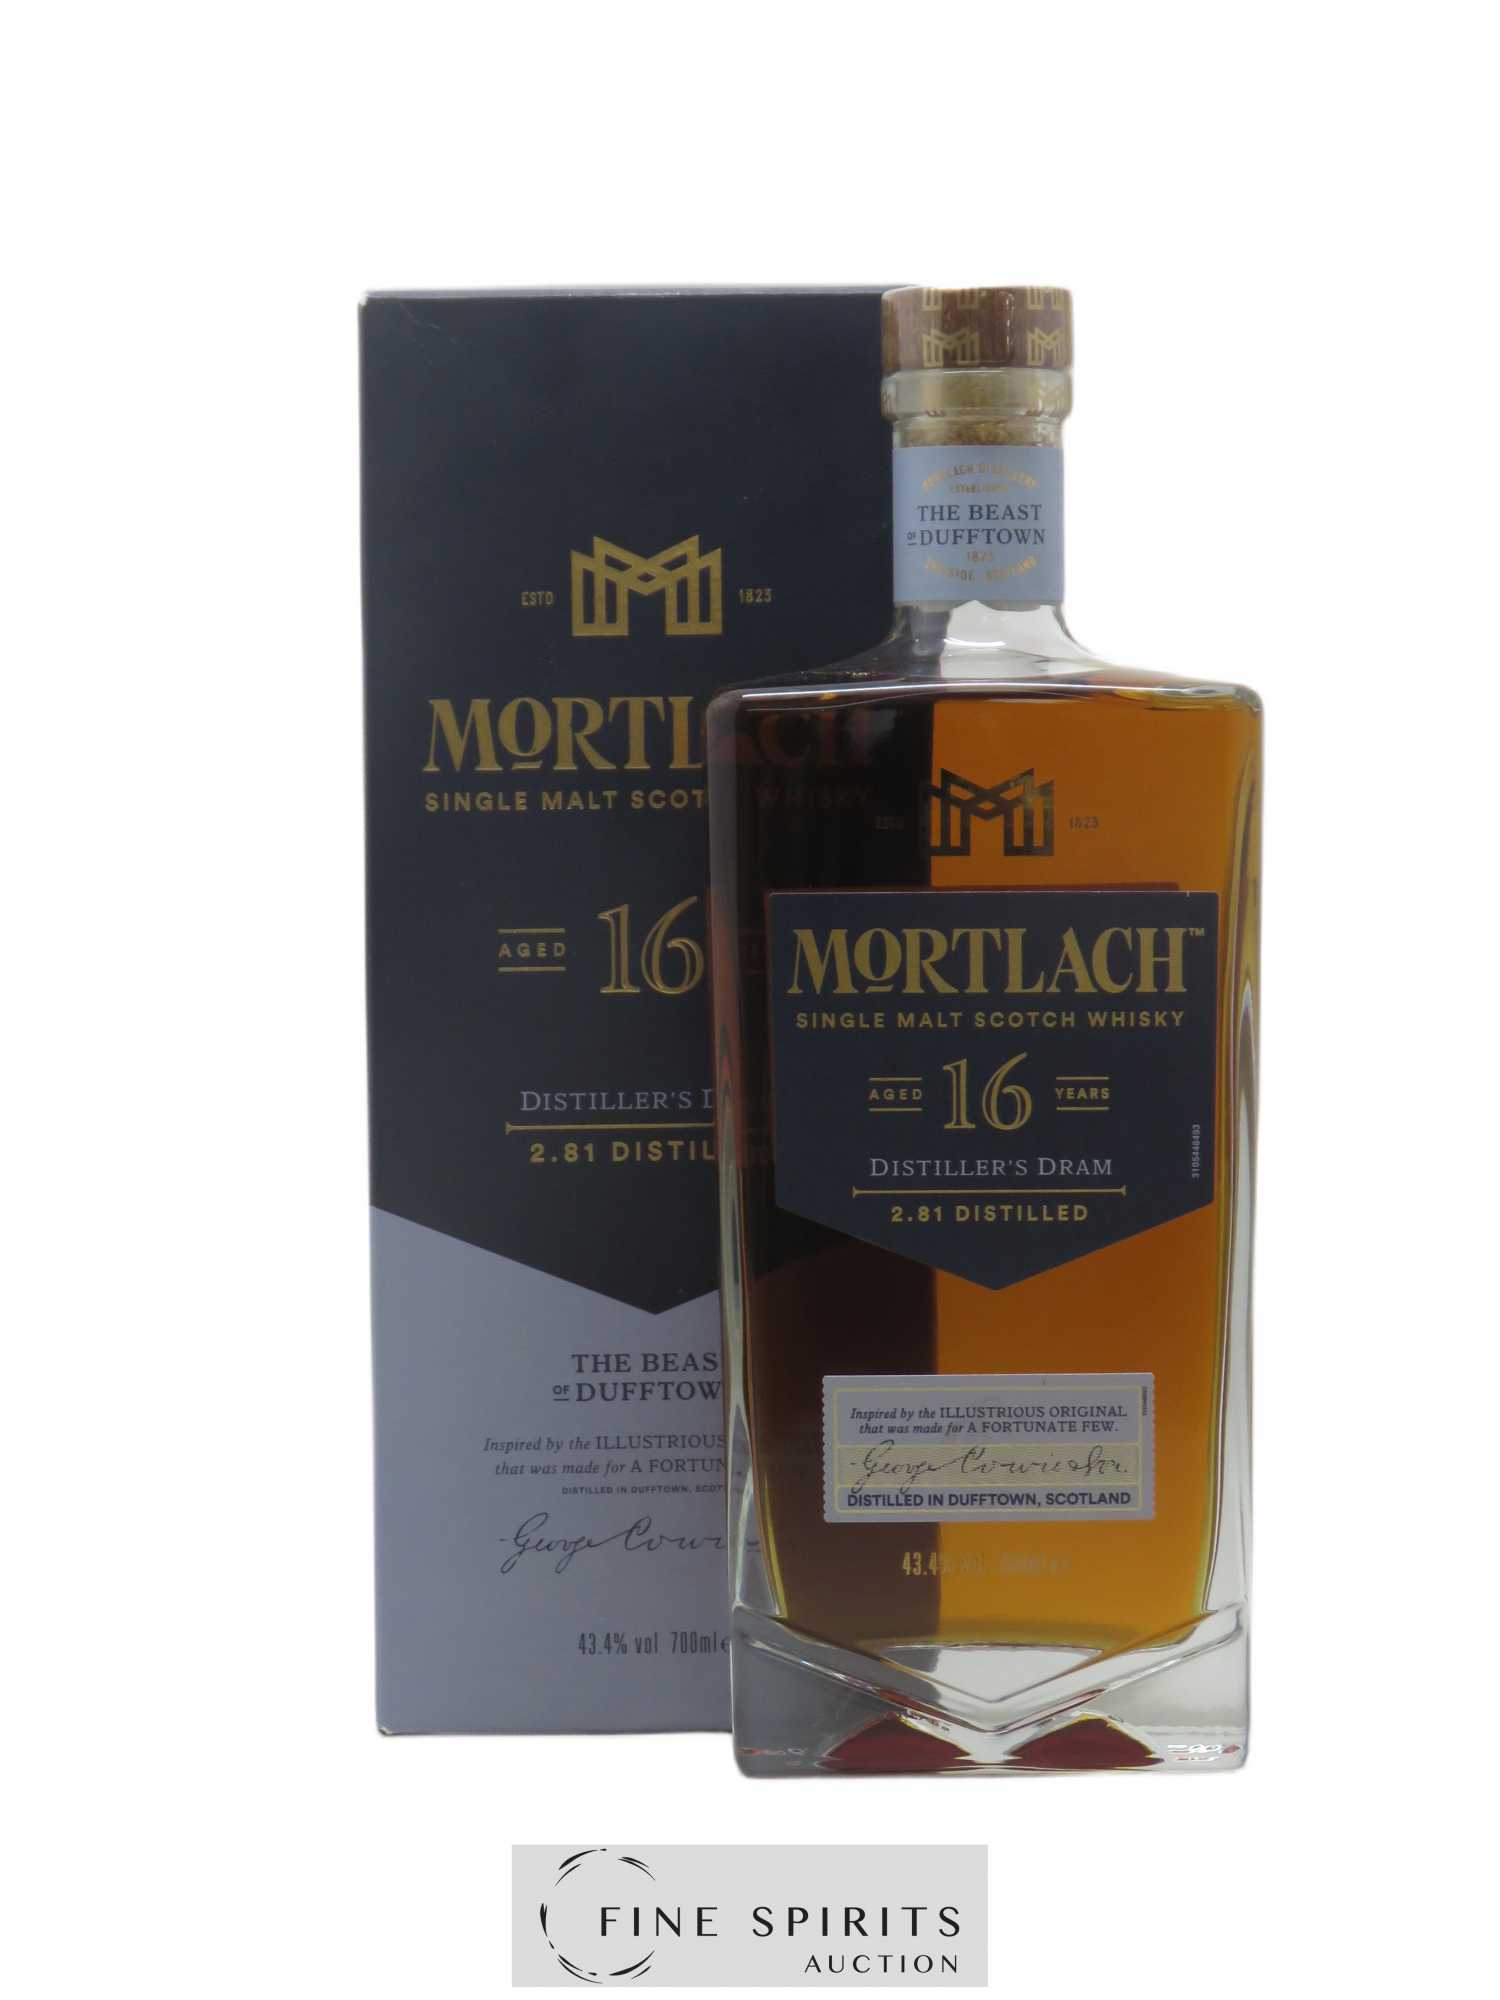 Mortlach 16 years Of. Distiller's Dram 2.81 Distilled